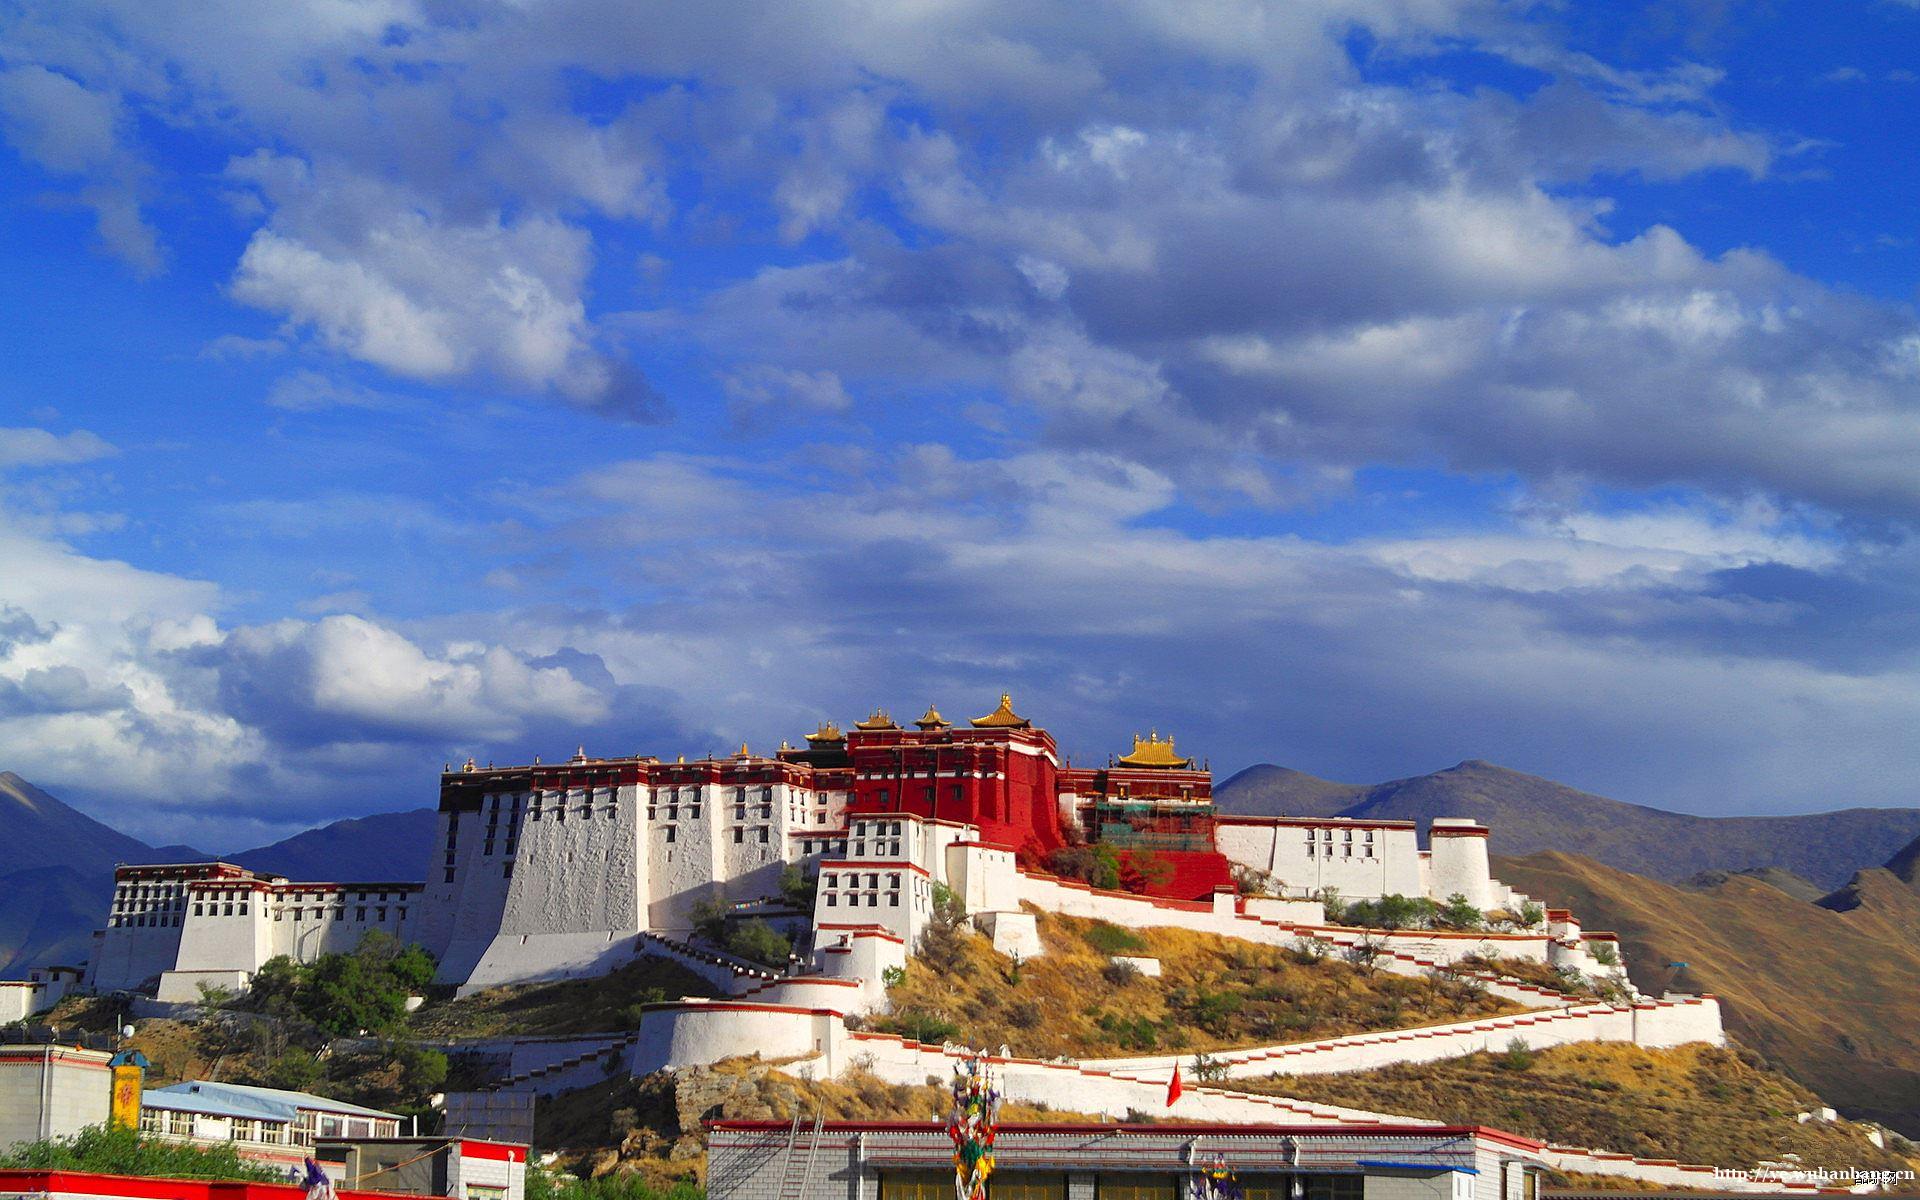 长途自驾游 旅行摄影 独享生活游 西藏 大理 三亚